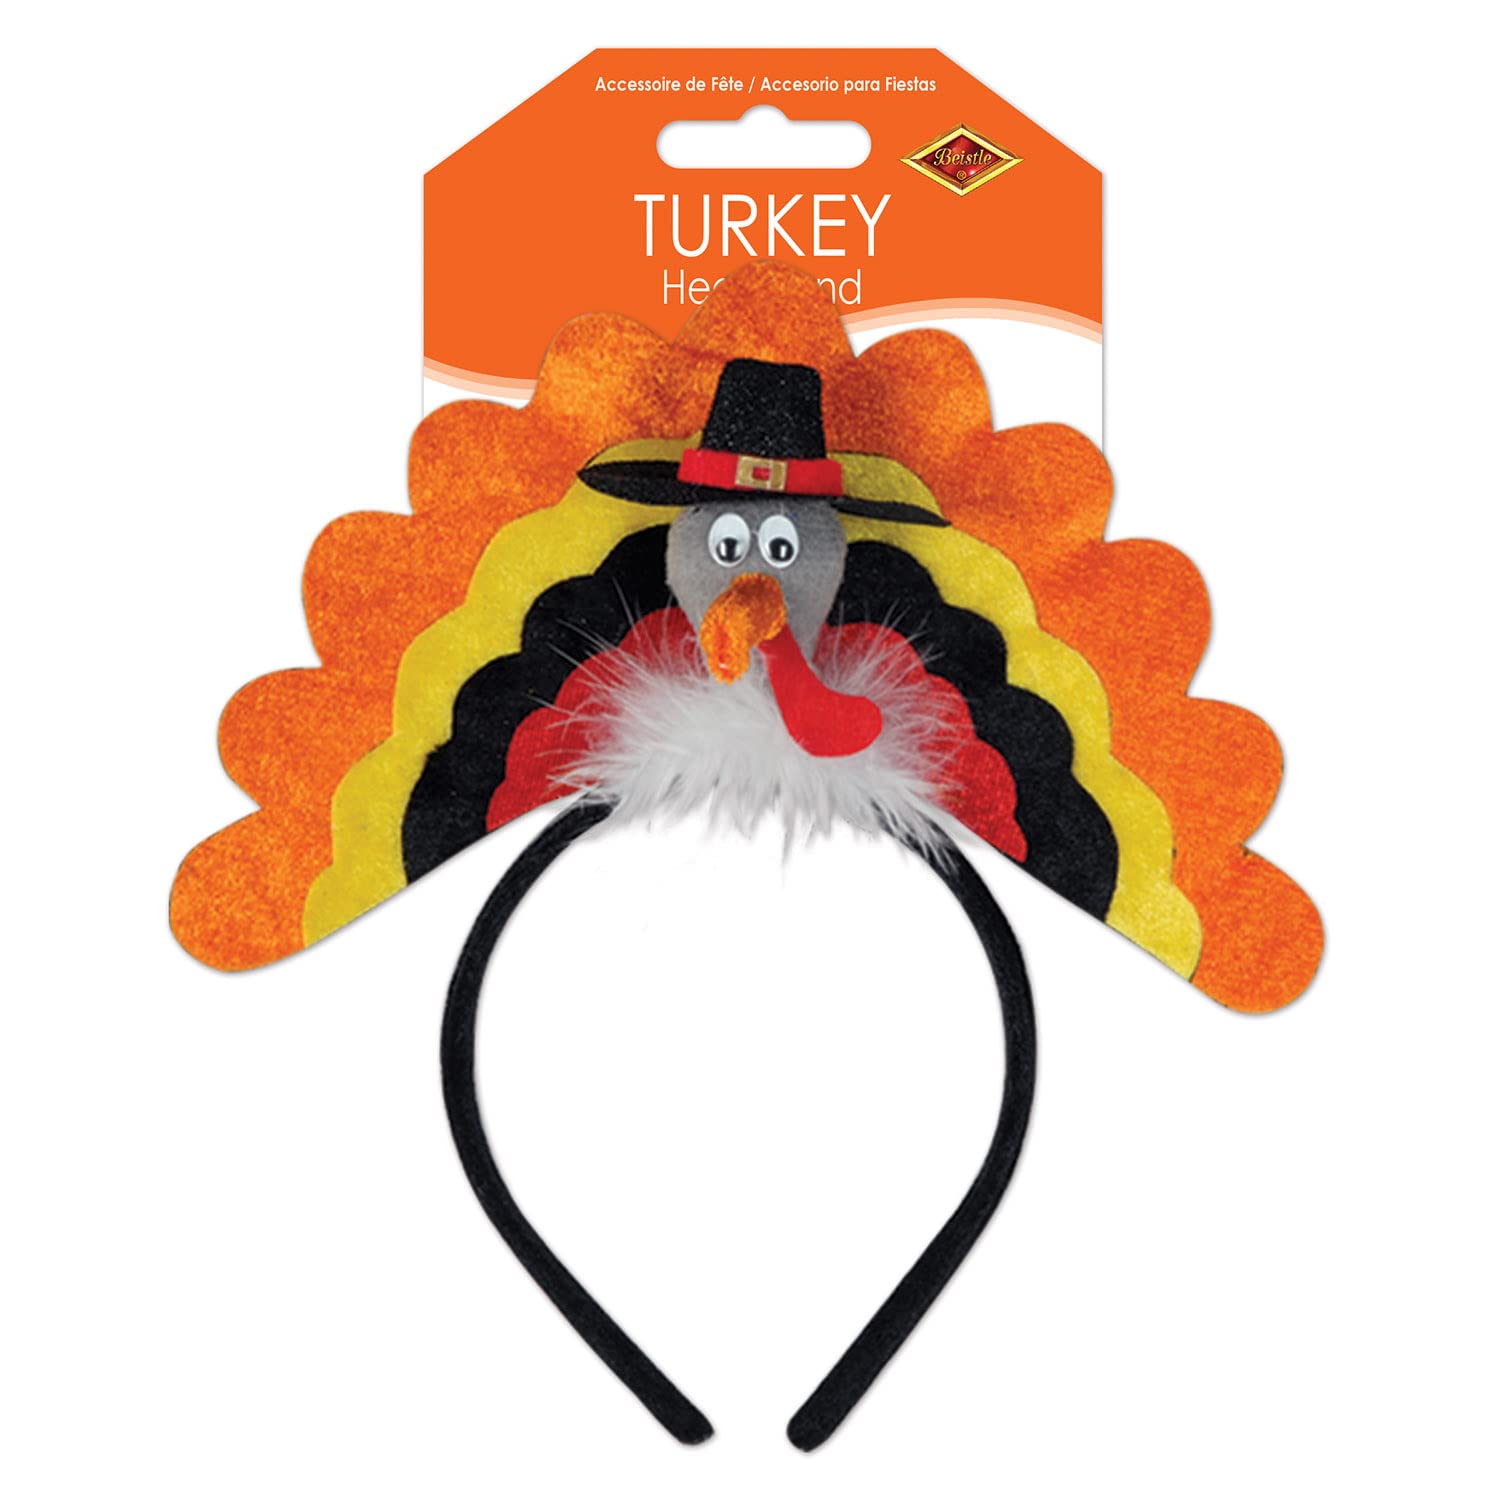 Turkey Headband Party Accessory (1 count) (1/Pkg)